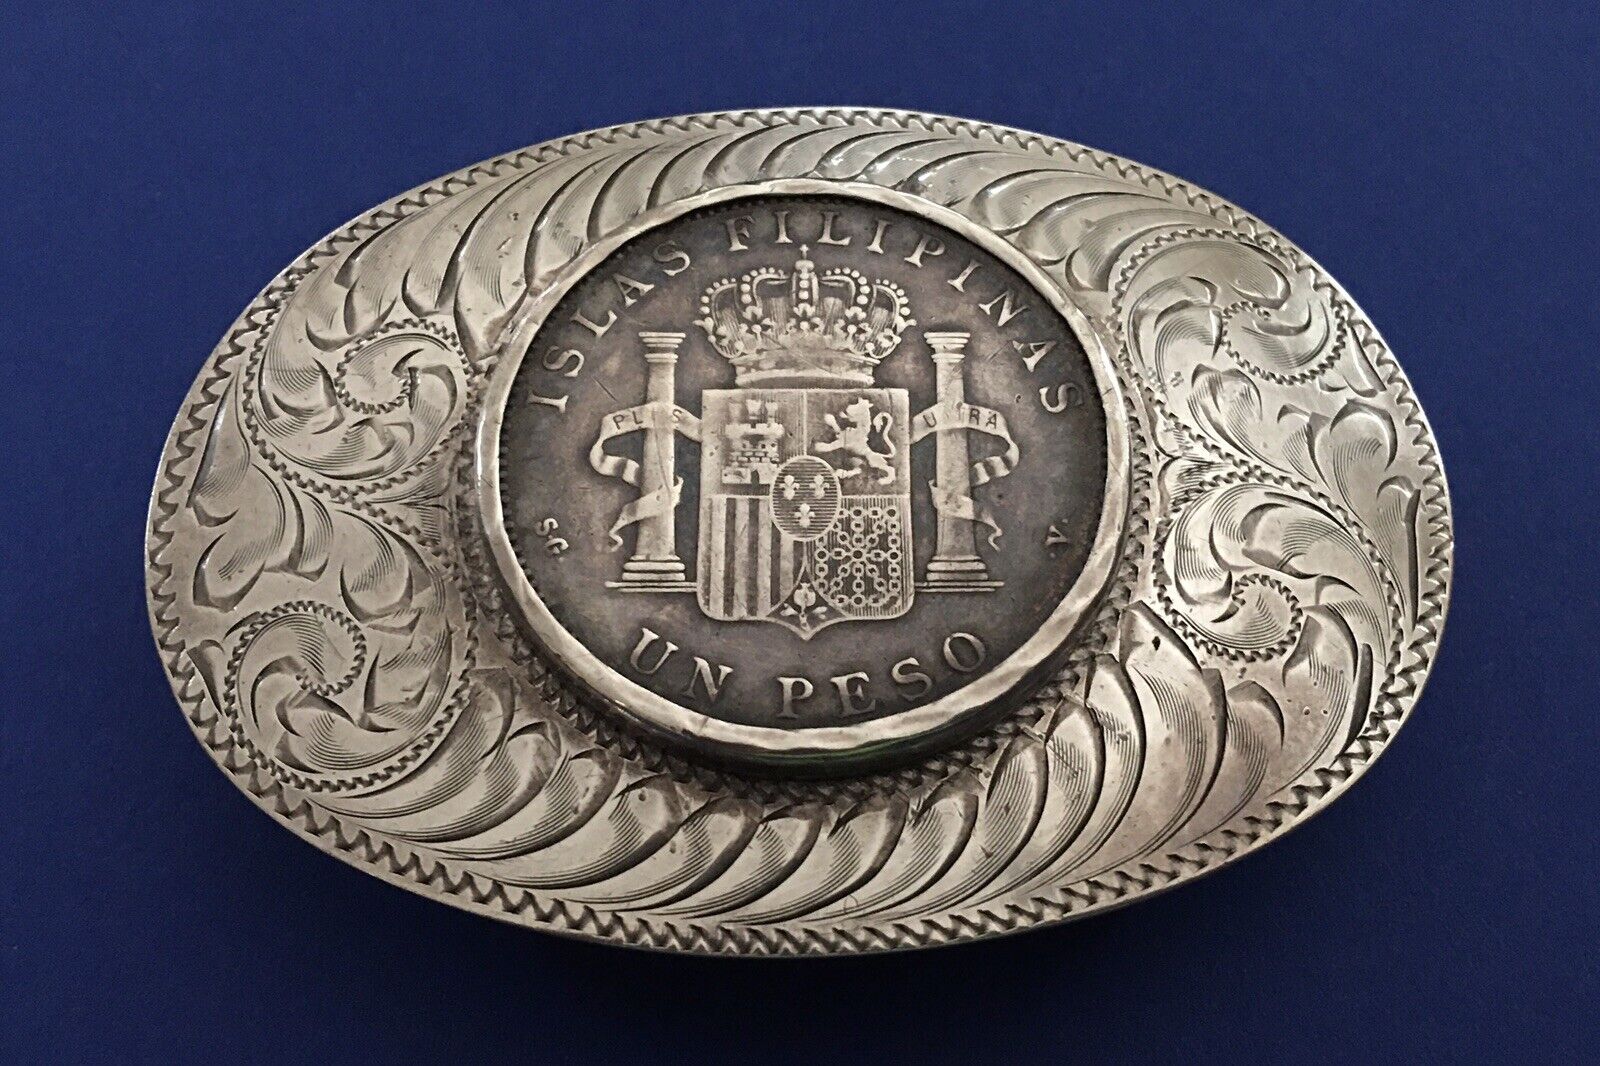 SUPER Rare 1897 Filipinas Espana Peso Coin Boyd Reno Sterling Silver Belt Buckle